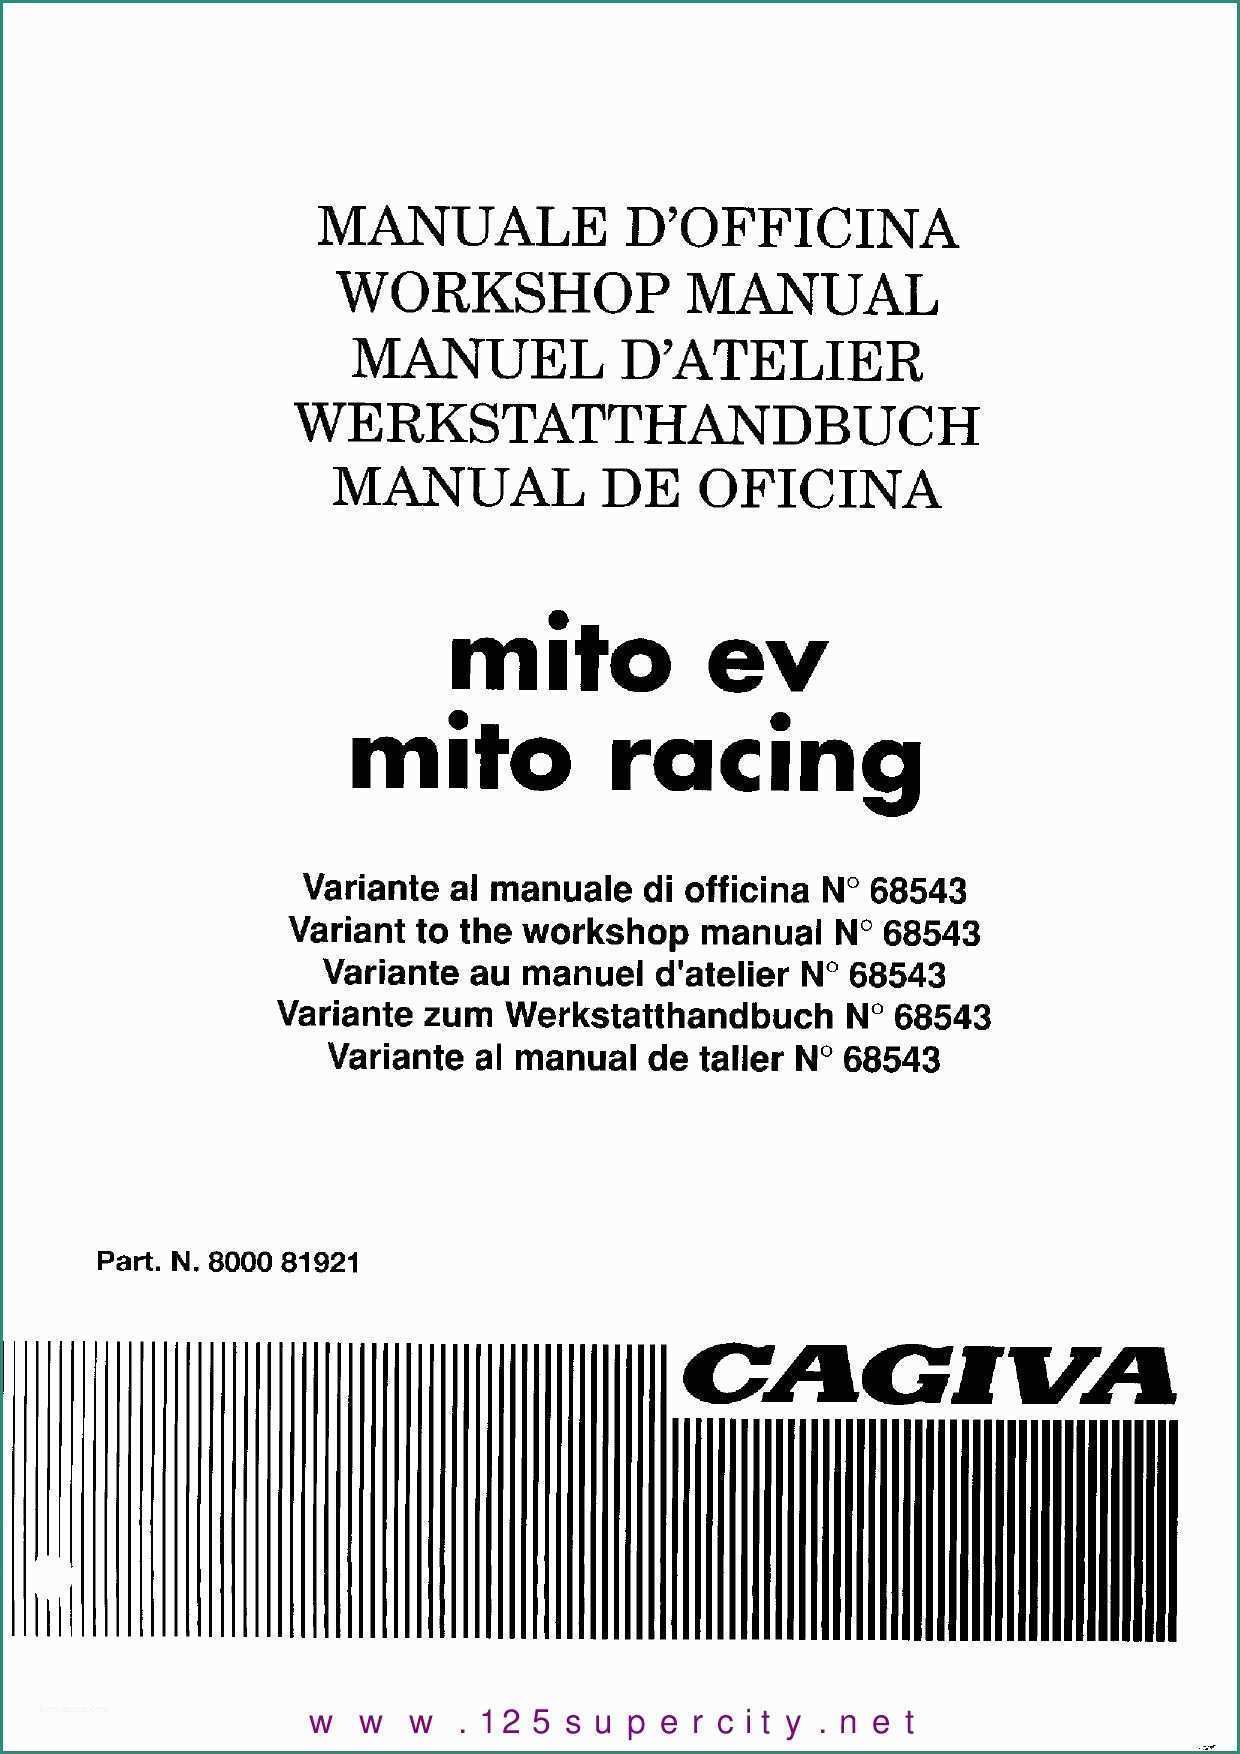 Vendo attrezzatura Officina Usata E Manuel Cagiva Mito Ev Racing 95 by Christ Cfouq issuu